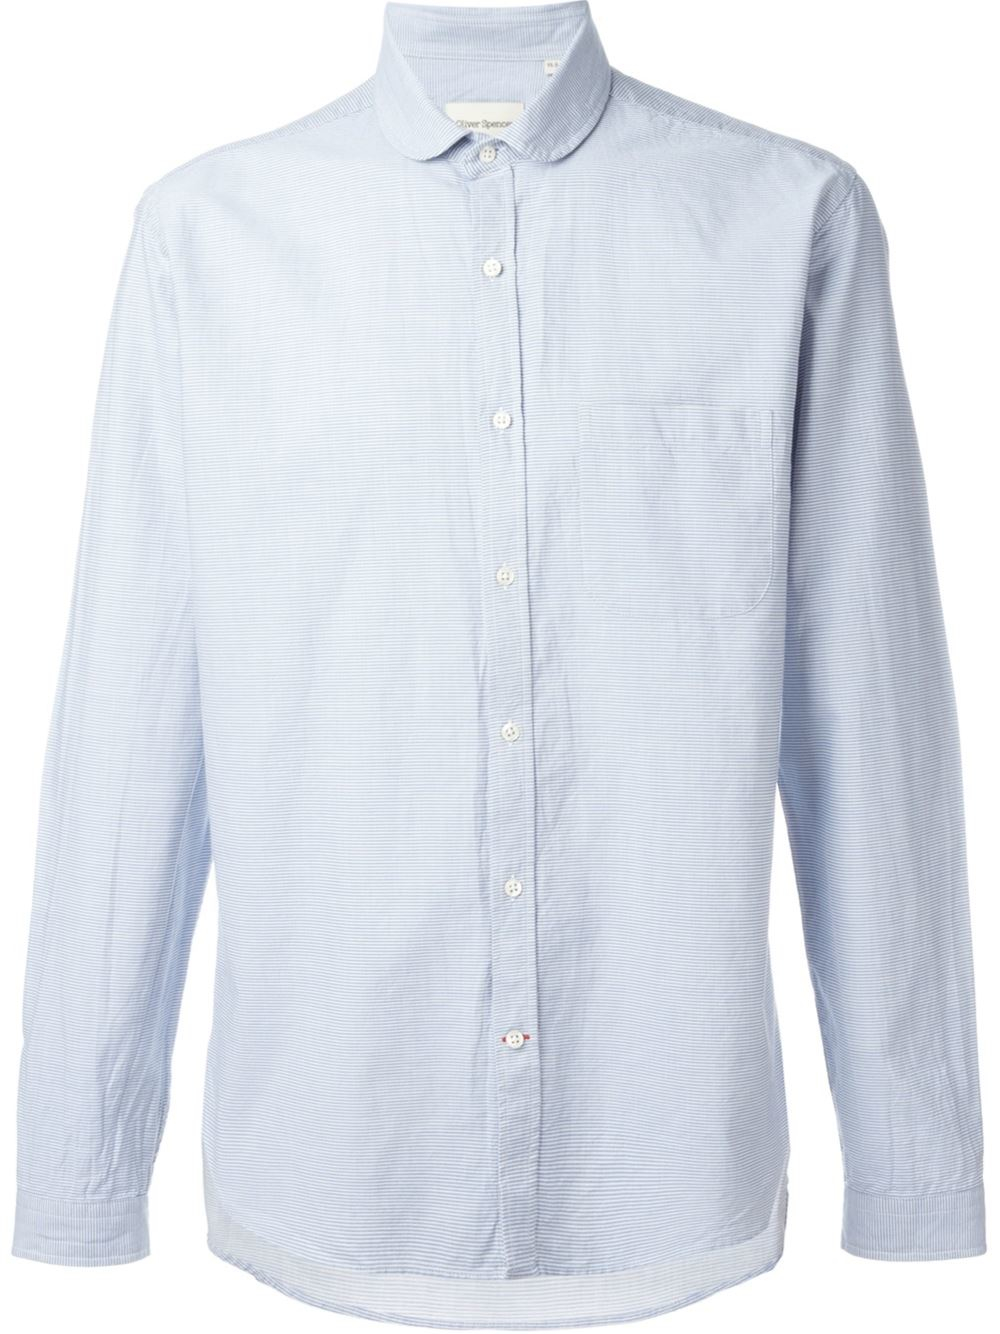 Lyst - Oliver spencer Eton Collar Shirt in Blue for Men